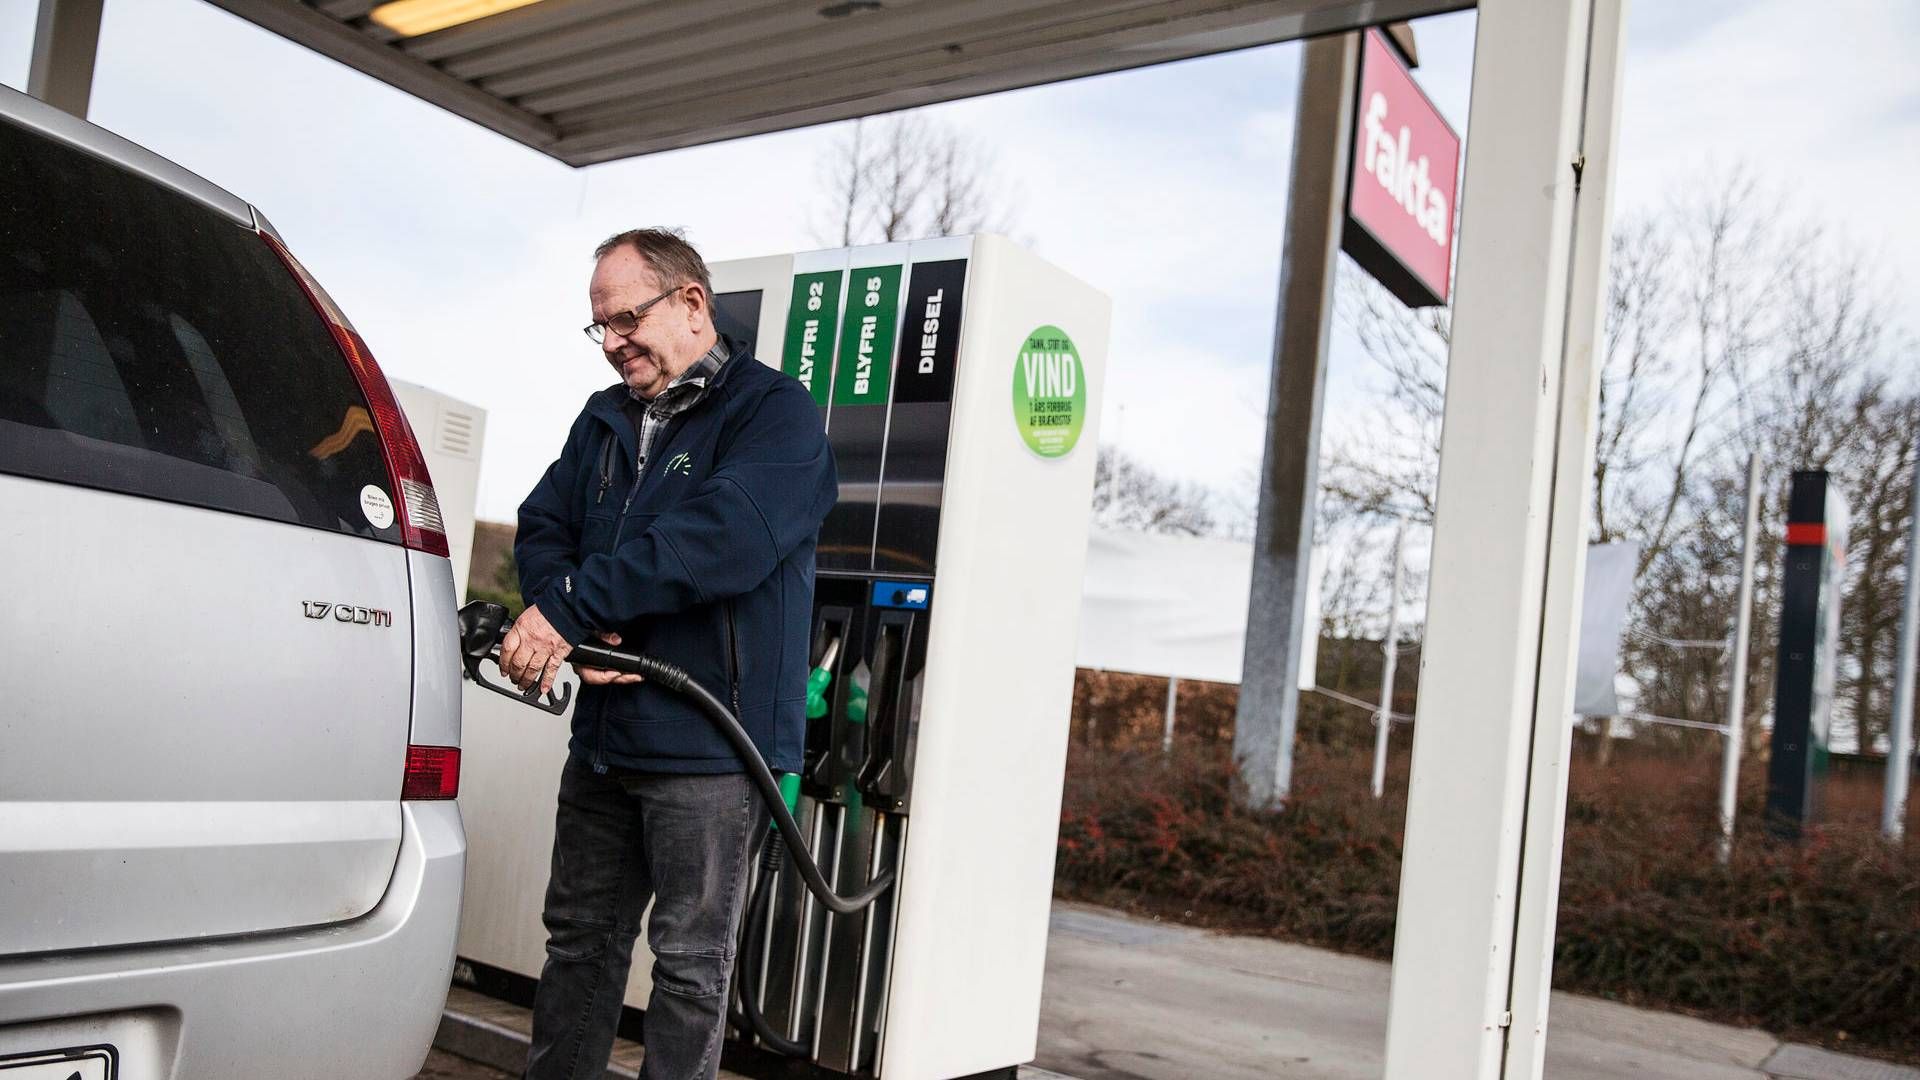 Mandag steg priserne på benzin og diesel med 20 øre per liter. | Foto: Niels Hougaard/Jyllands-Posten/Ritzau Scanpix